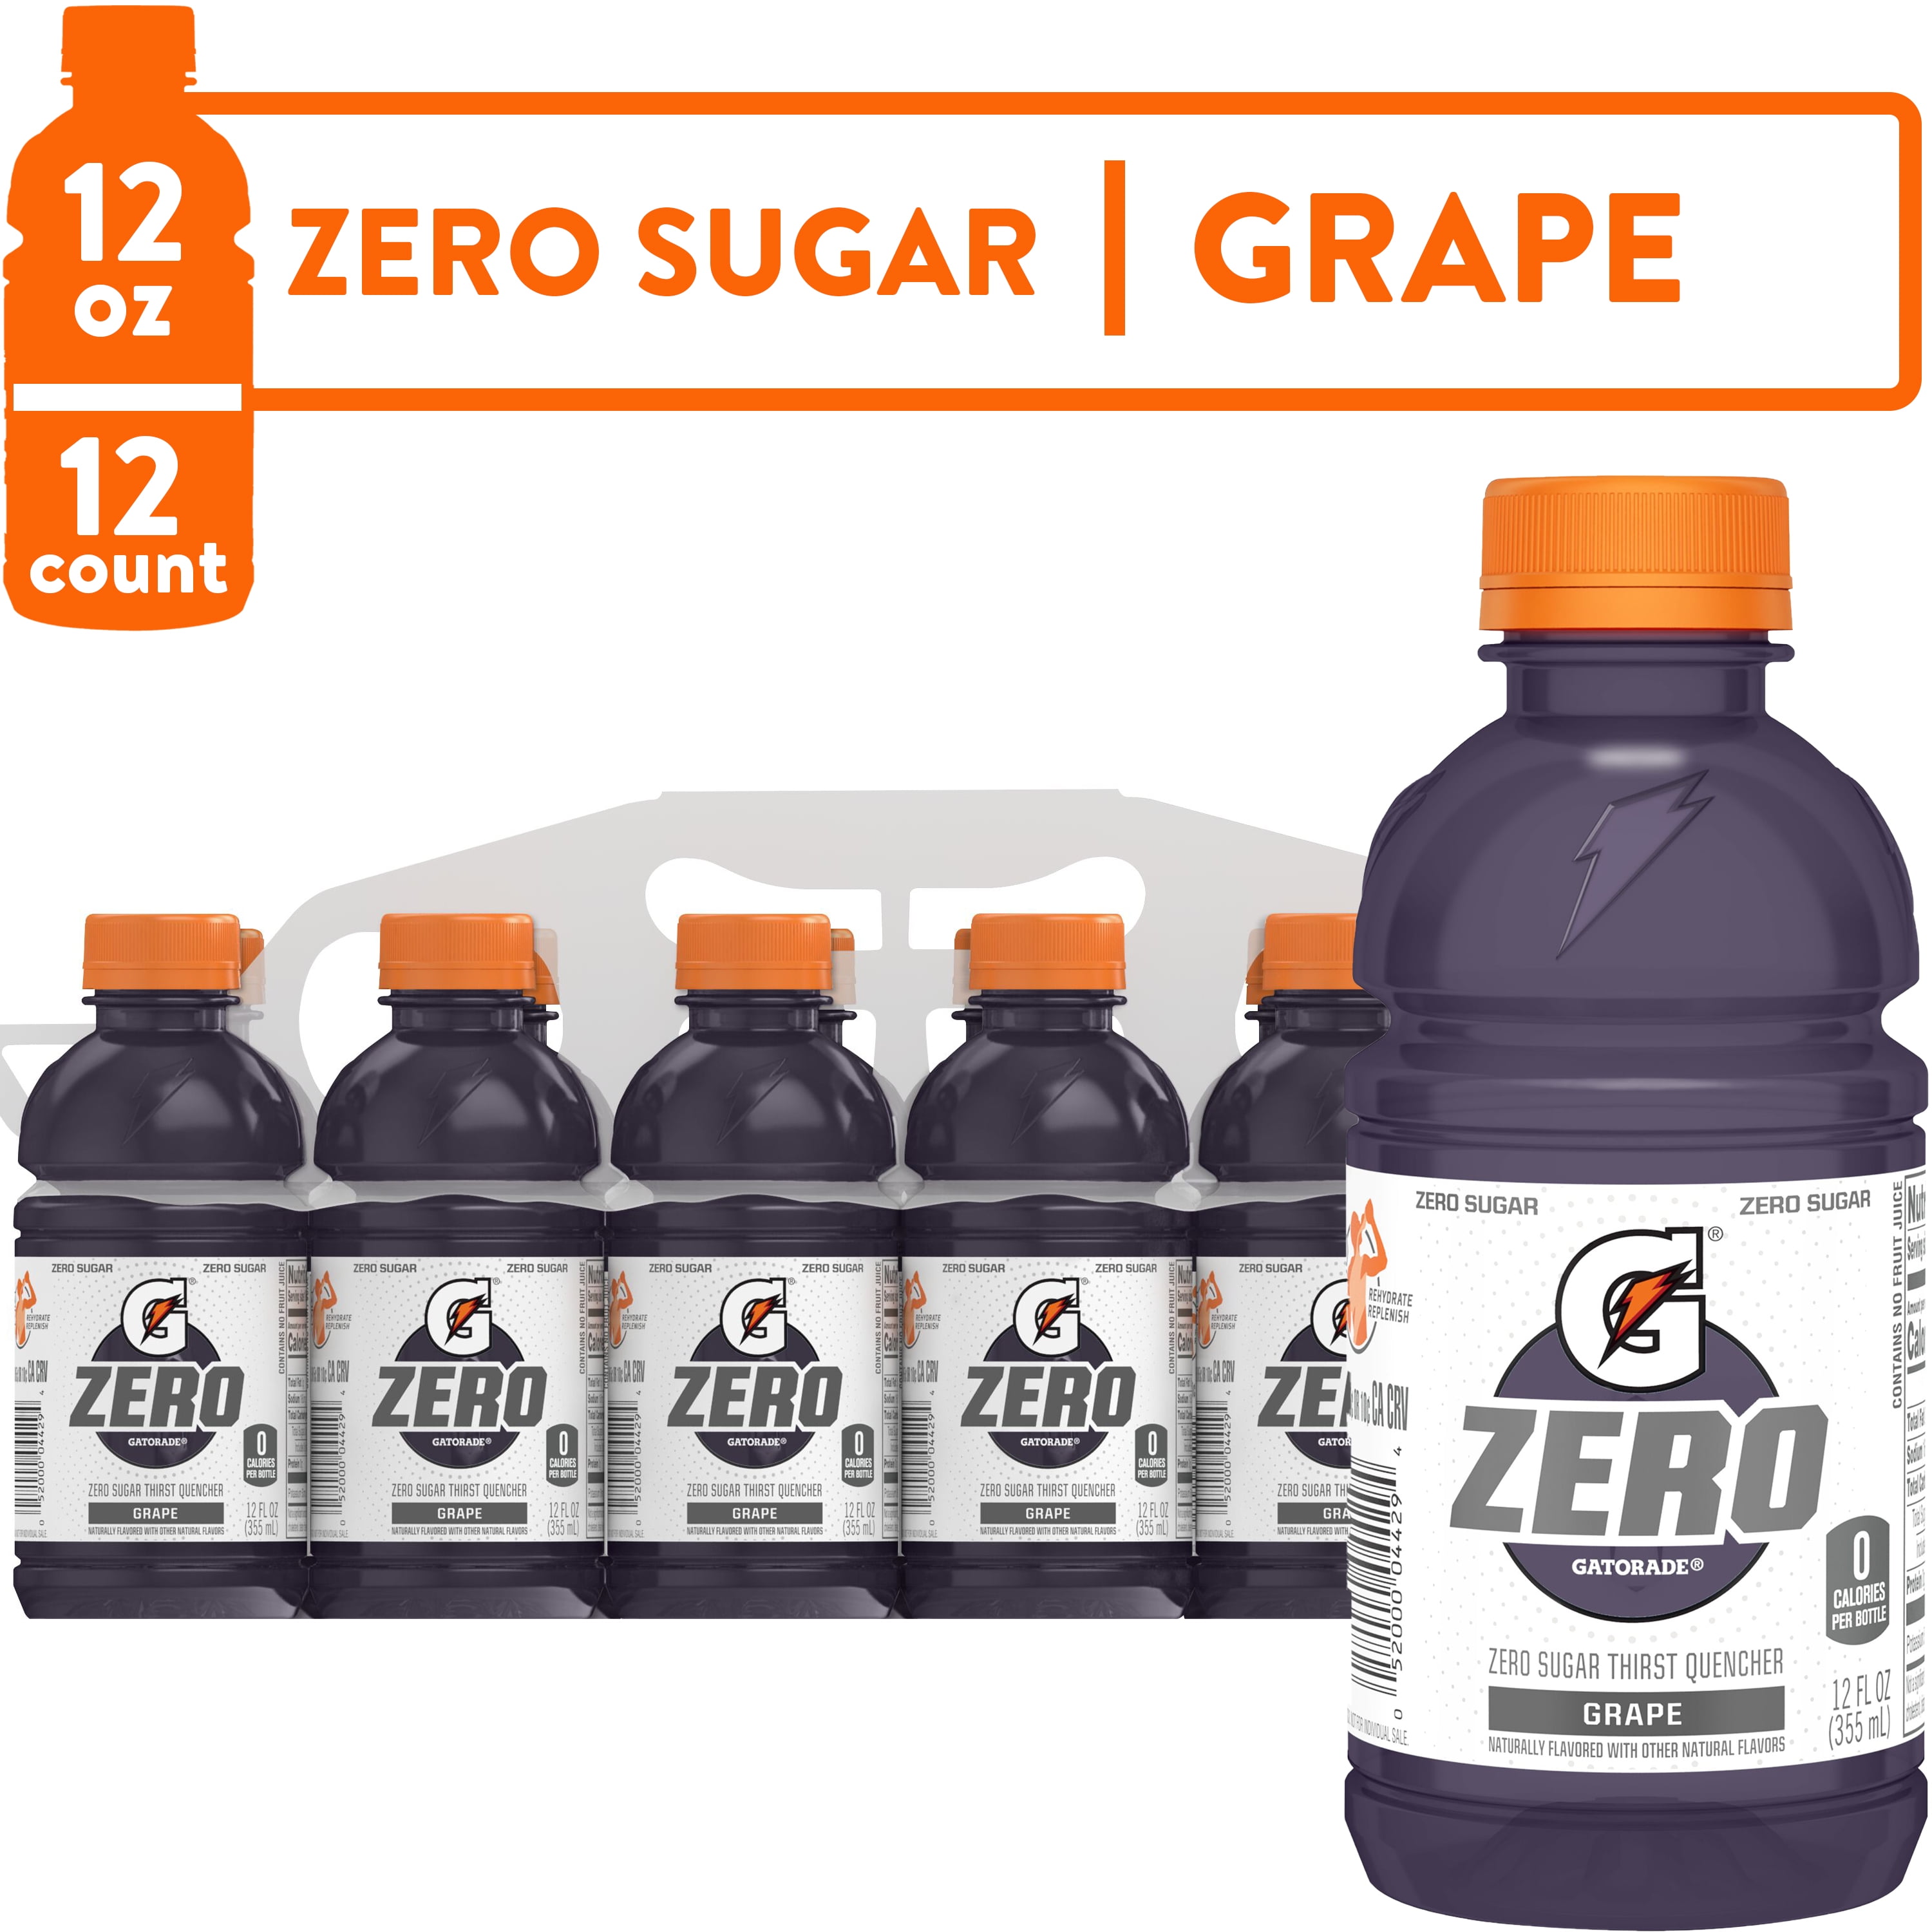 Gatorade G Zero Sugar Grape Thirst Quencher Sports Drink, 12 oz, 12 Pack Bottles